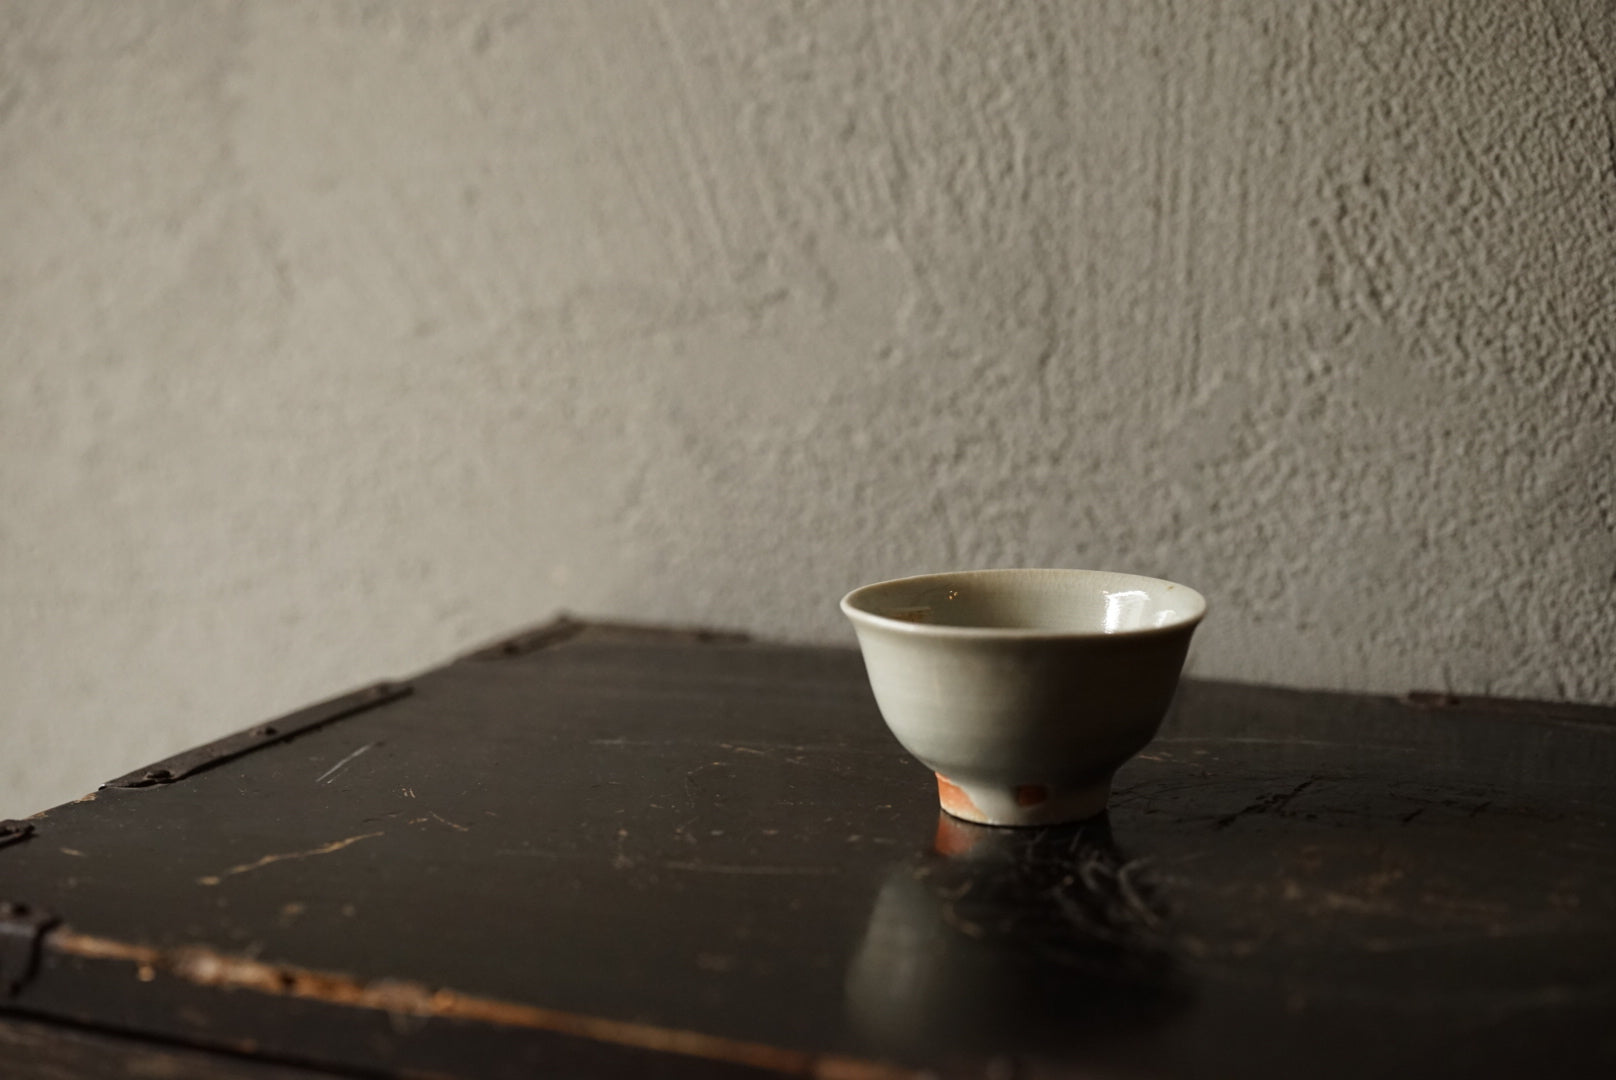 Hard cup / Masahiro Takeka